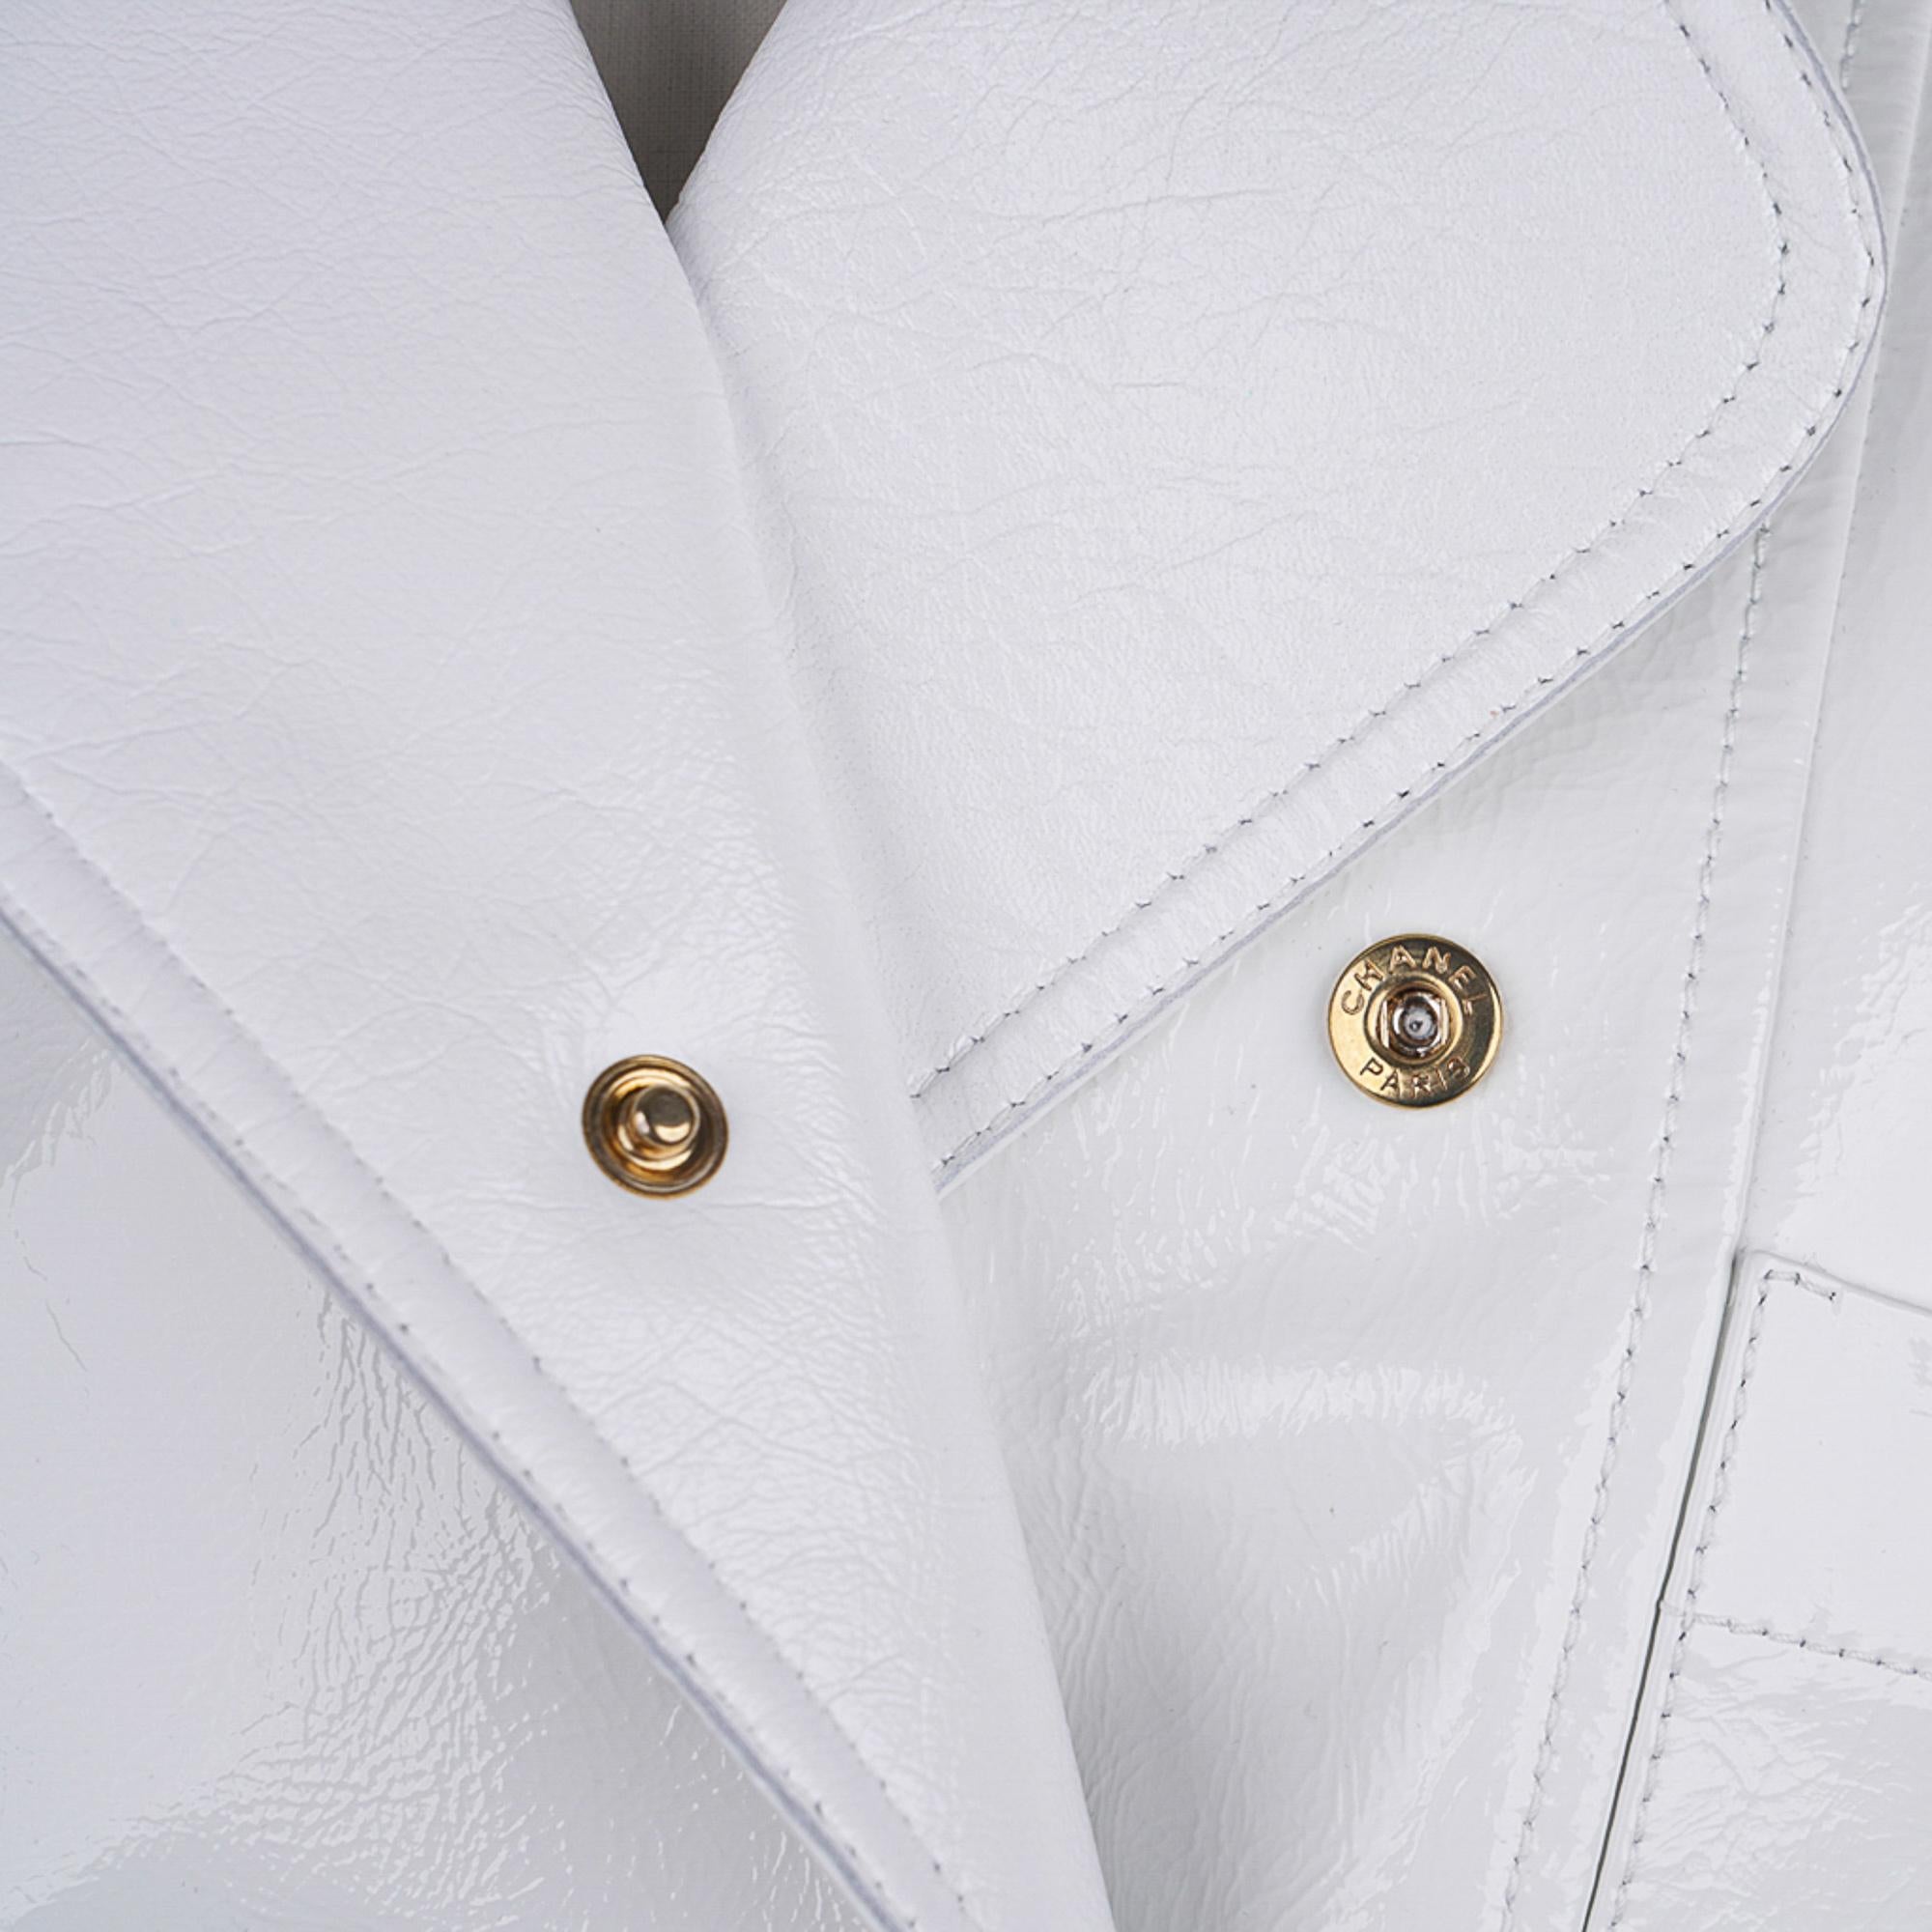 Veste courte Chanel 2020-21FW en cuir verni blanc style motard, taille 36/4, neuve avec étiquettes 7